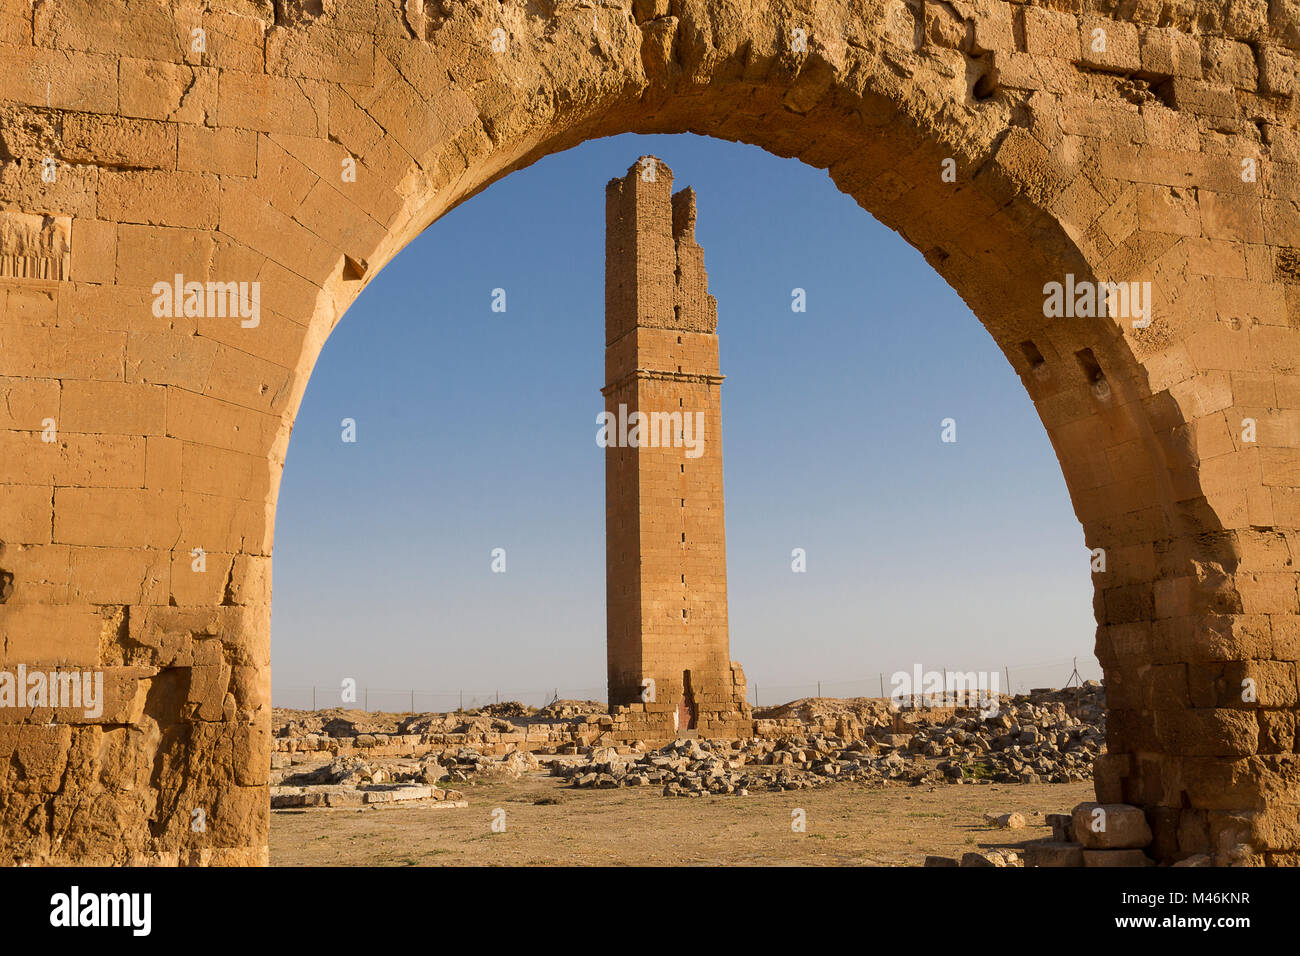 Ruins of the ancient city of Harran, Sanliurfa, Turkey Stock Photo